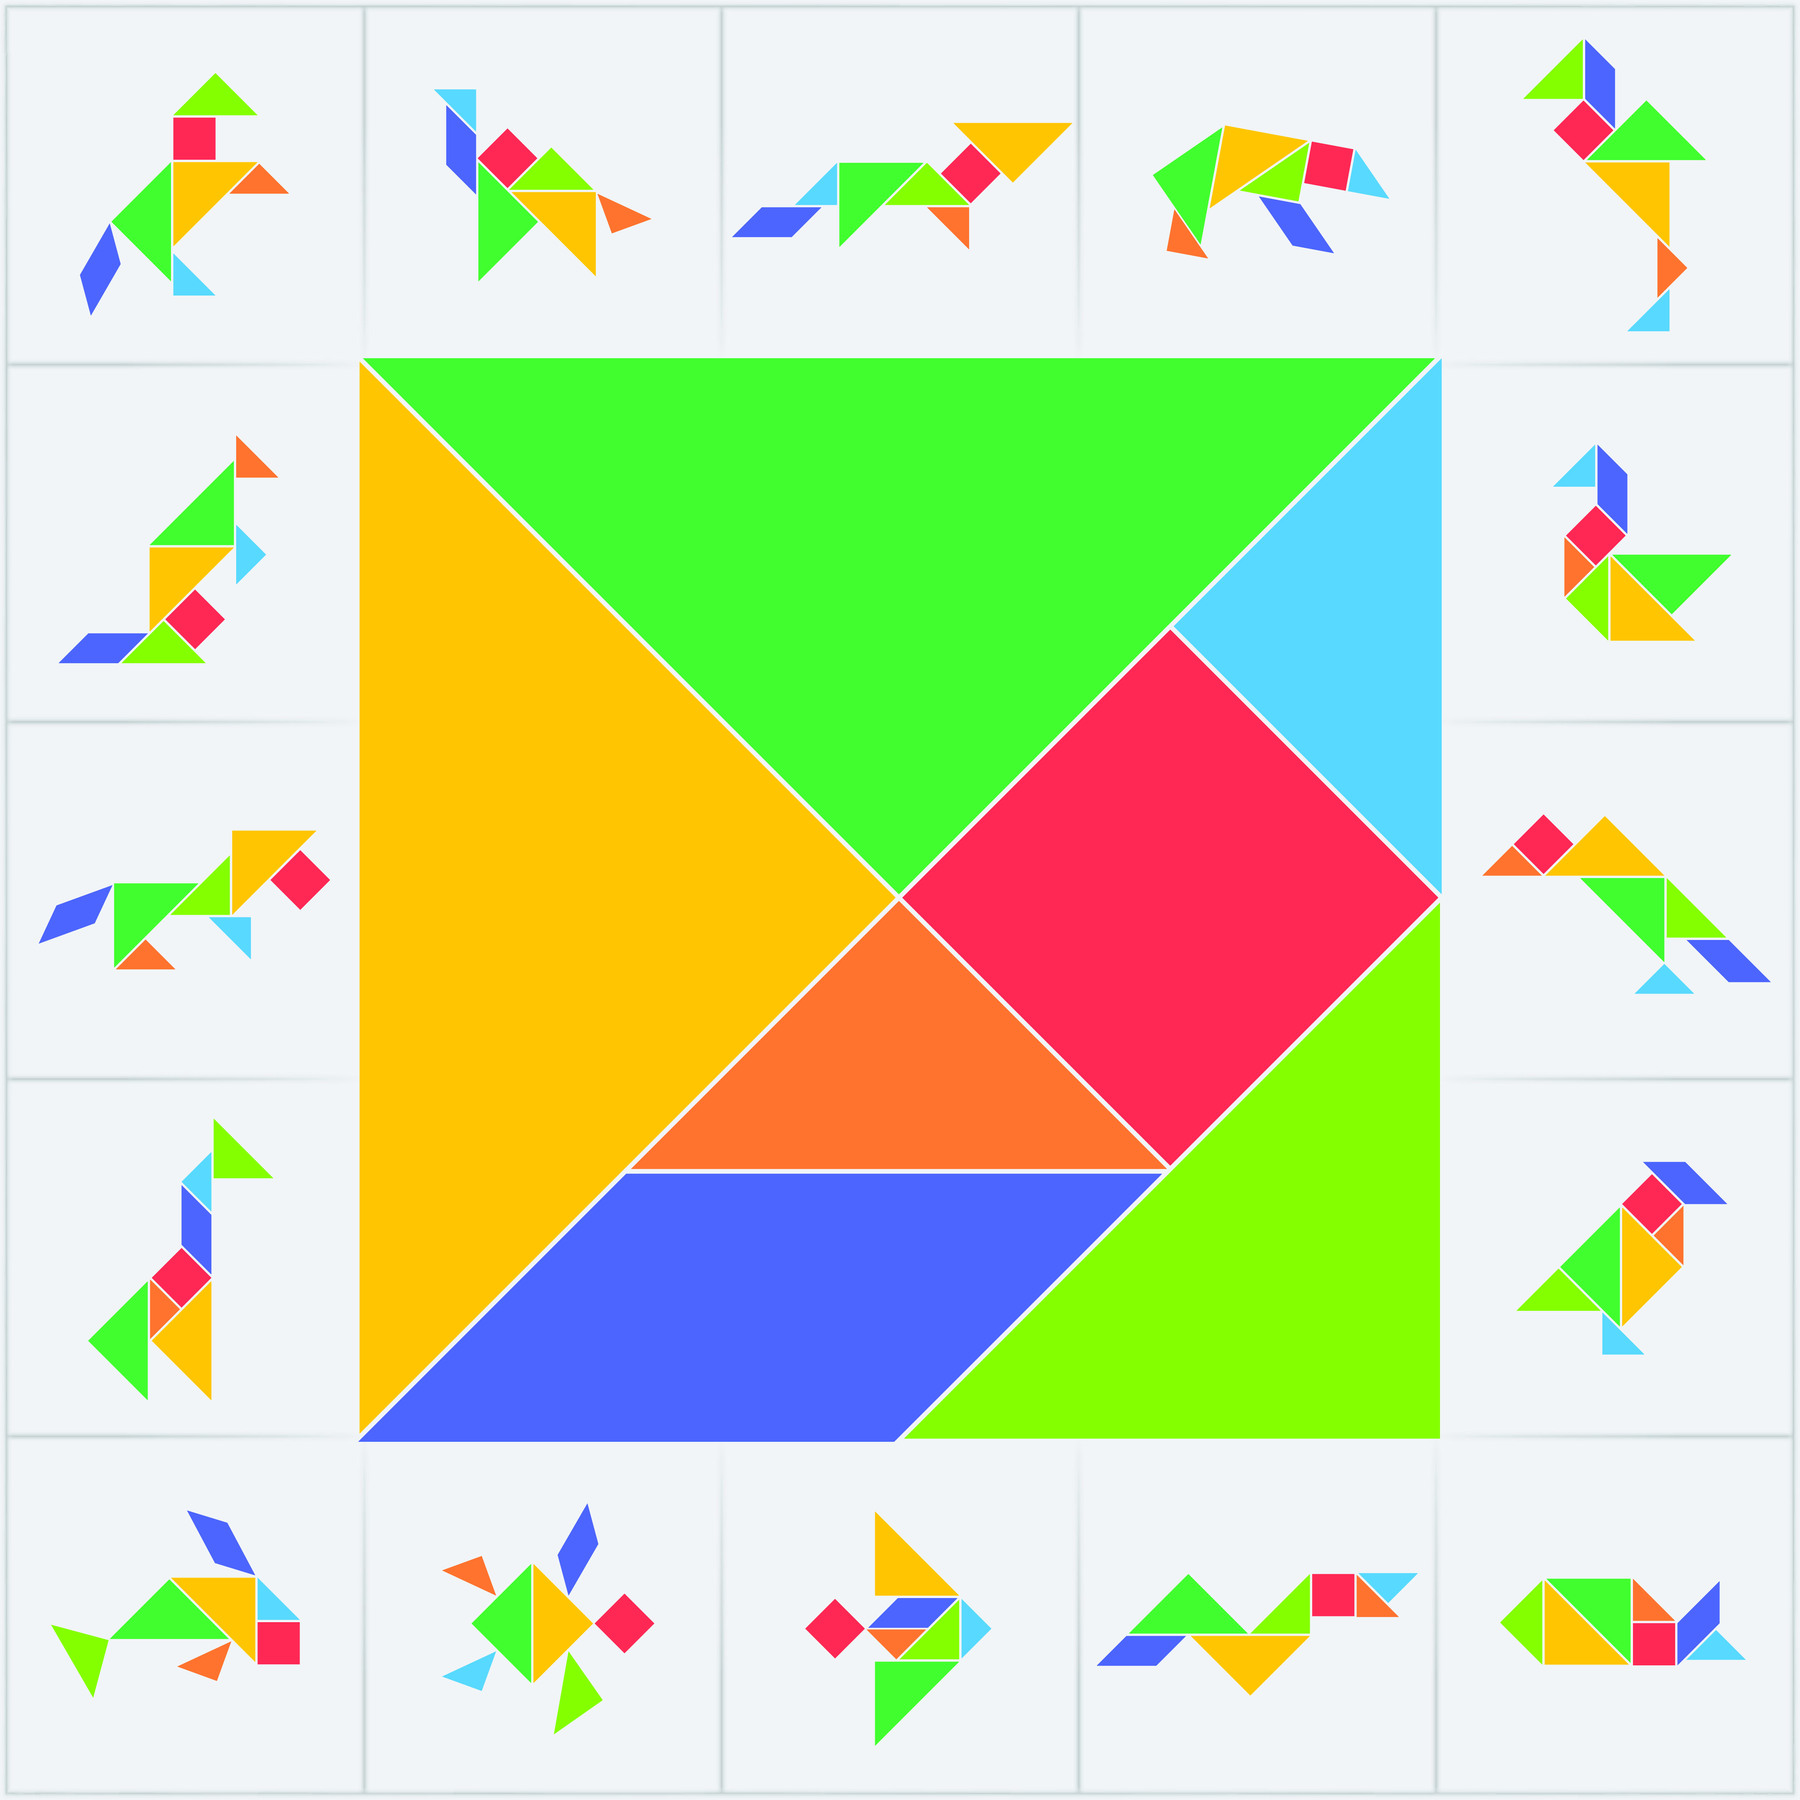 Ilustração. Quadrado composto por peças coloridas do tangram: dois triângulos grandes, um triângulo médio, um paralelogramo, dois triângulos pequenos e um quadrado. Ao redor, quadrados brancos com diferentes figuras compostas por peças do tangram.